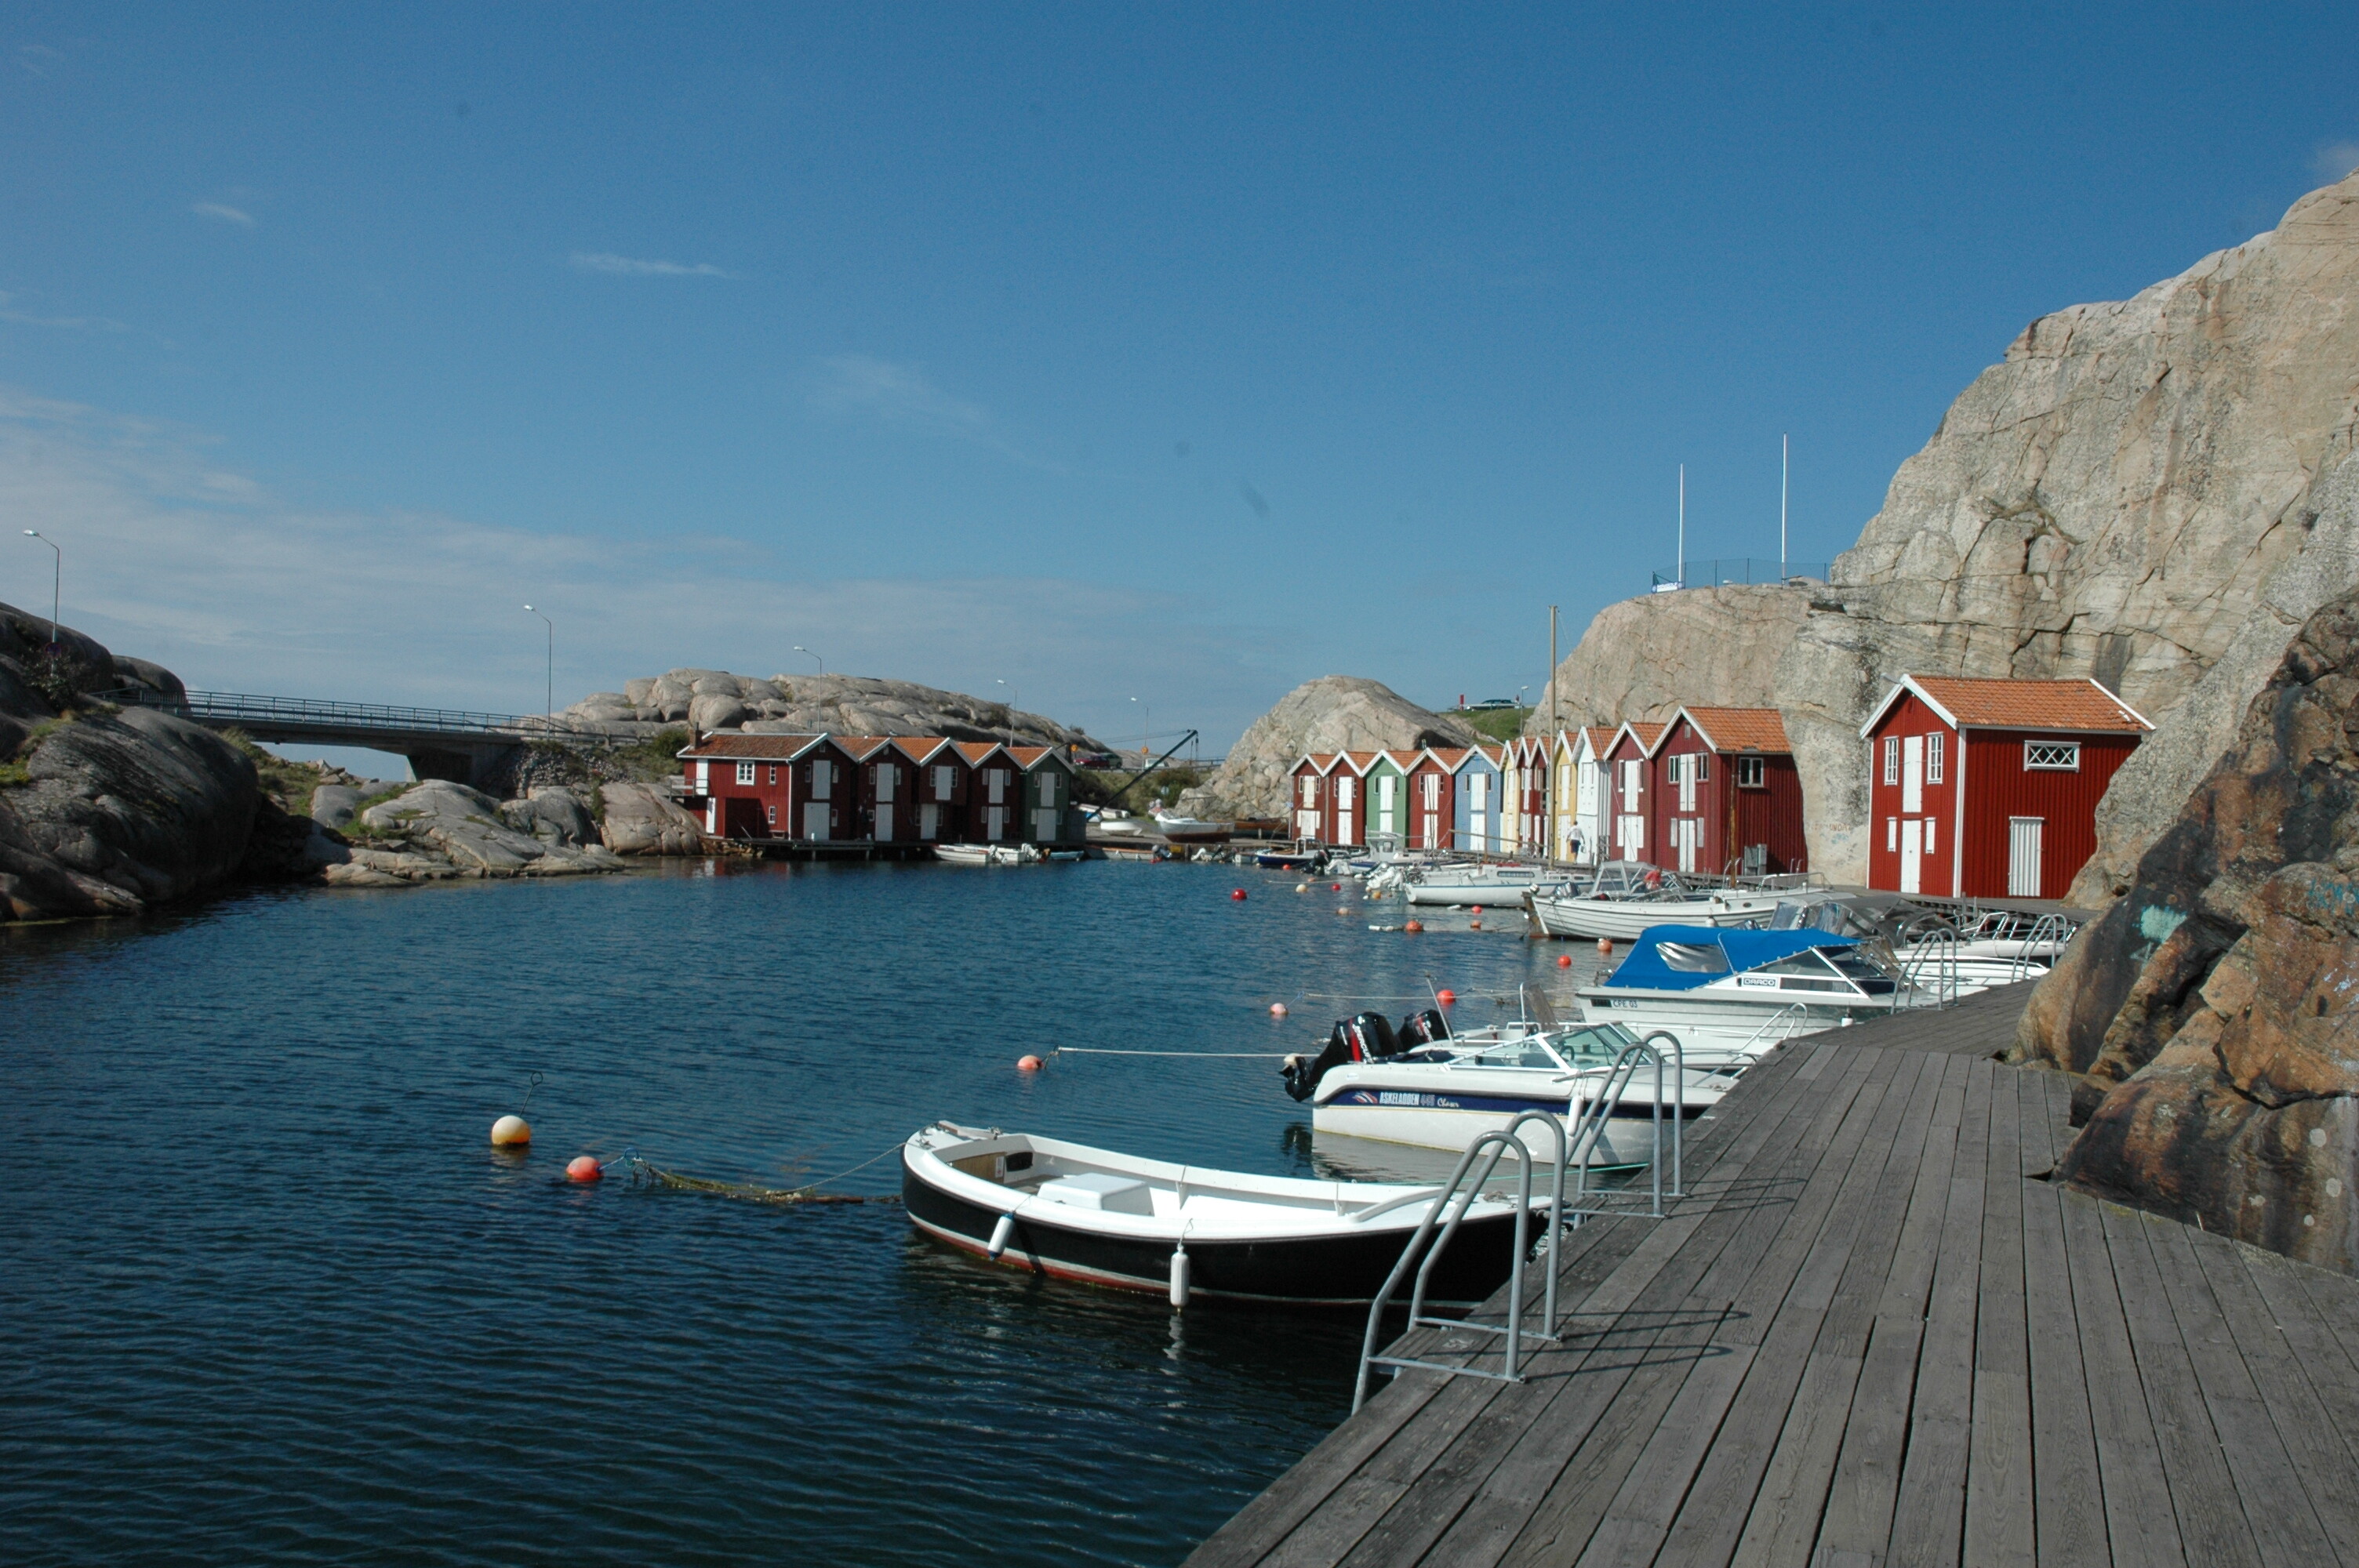 Typische rote Häuser und Boote an der See in Schweden